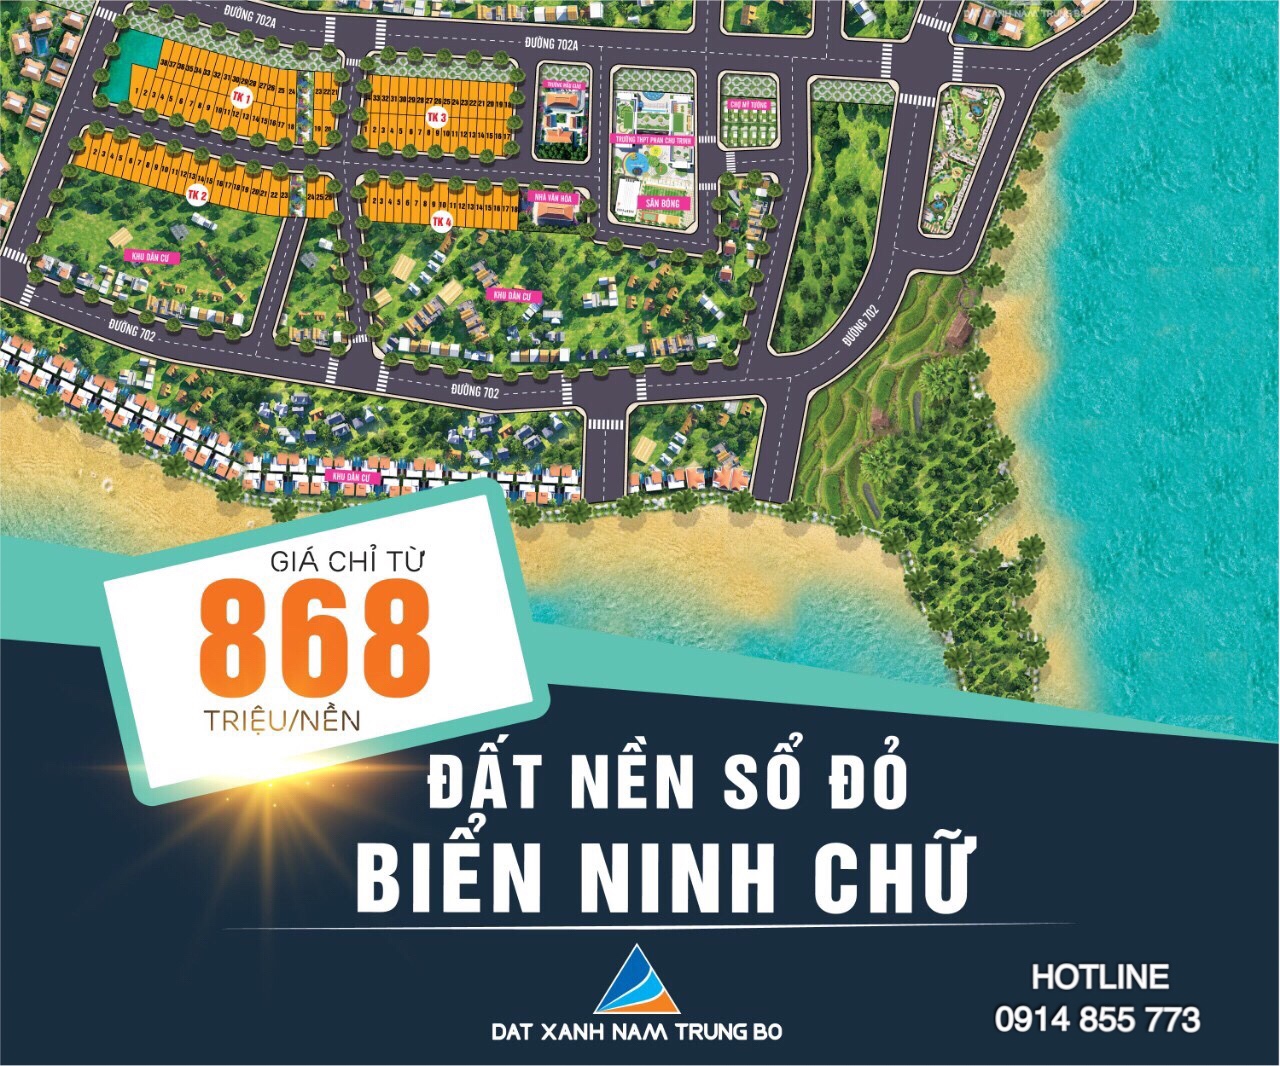 Cơn sốt đất nền tại Ninh Thuận 2019, nhanh tay chọn lô đẹp nhất dự án sắp mở bán Ninh Chữ Sea Gate